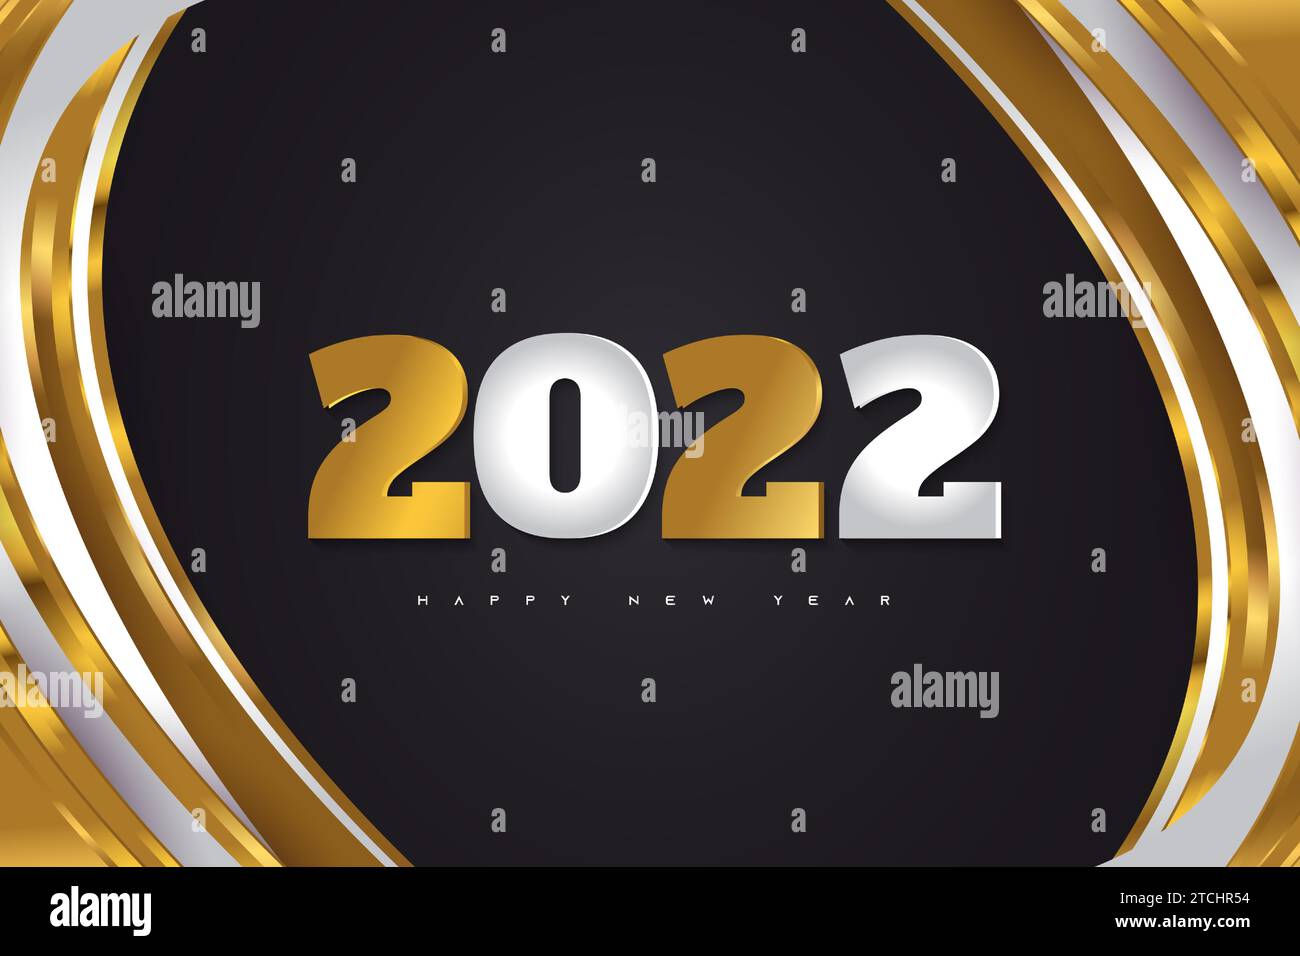 Happy New Year 2022 Banner oder Poster Design mit Silber- und Goldnummern auf schwarzem Hintergrund. 2022 Logo oder Symbol. Vektor-Illustrationen Für Feiertage Stock Vektor